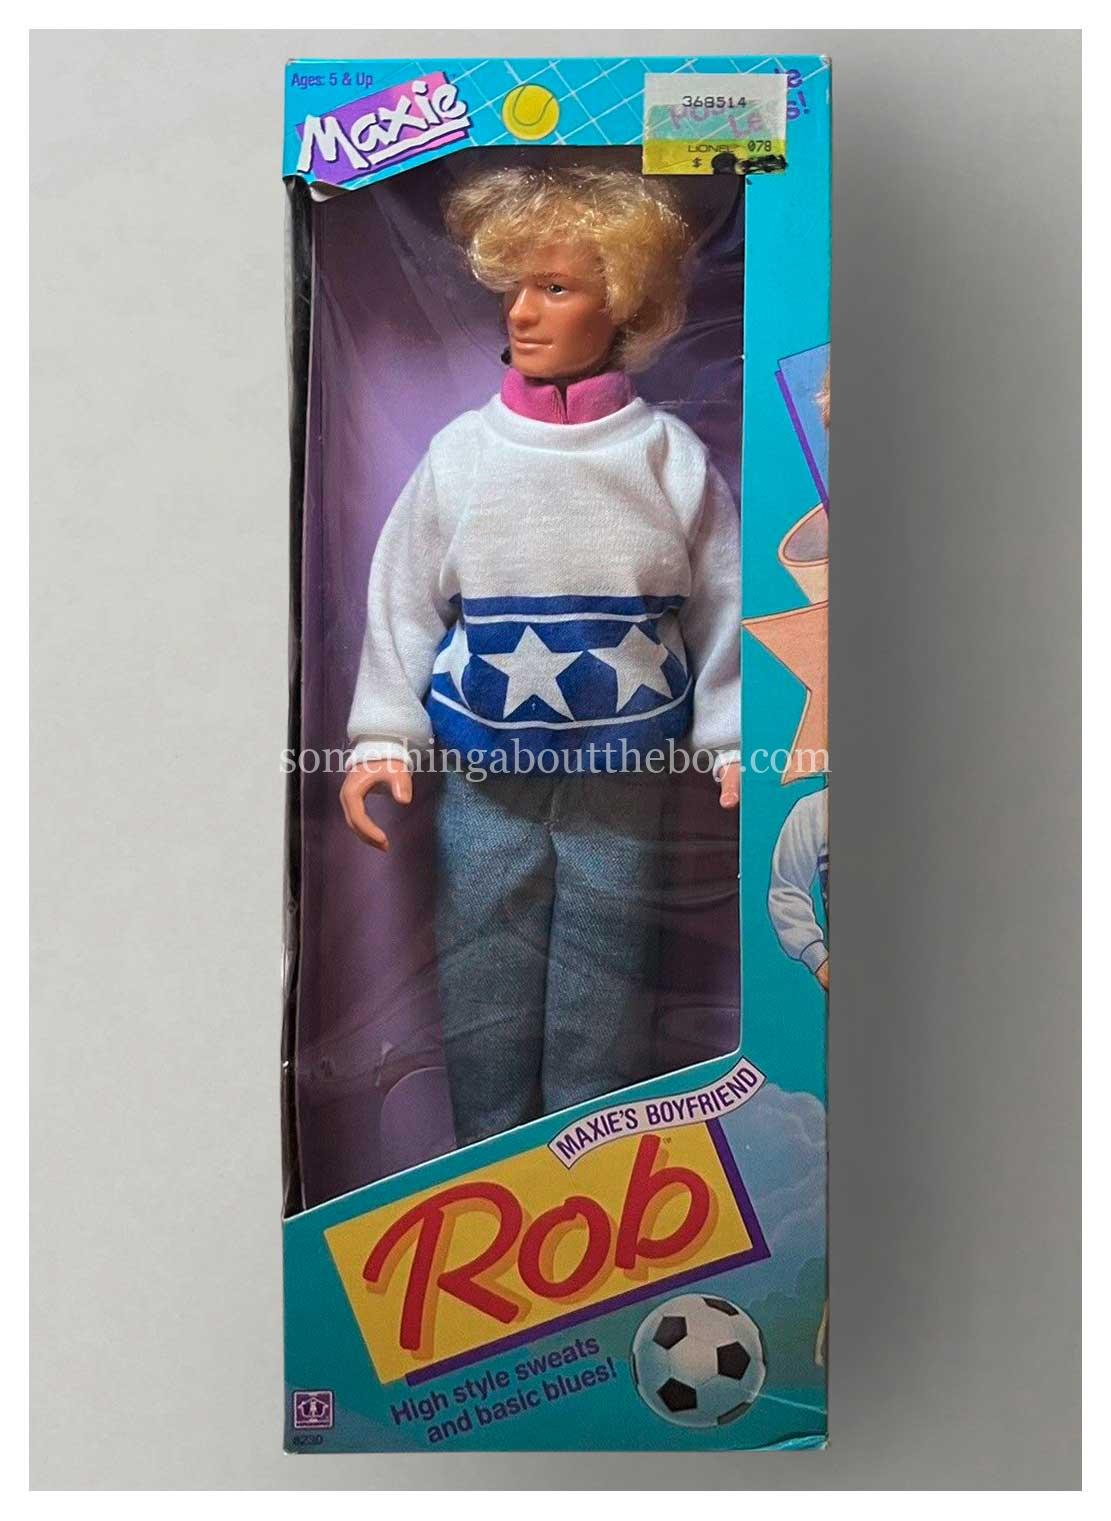 1987 #8230 Rob by Hasbro